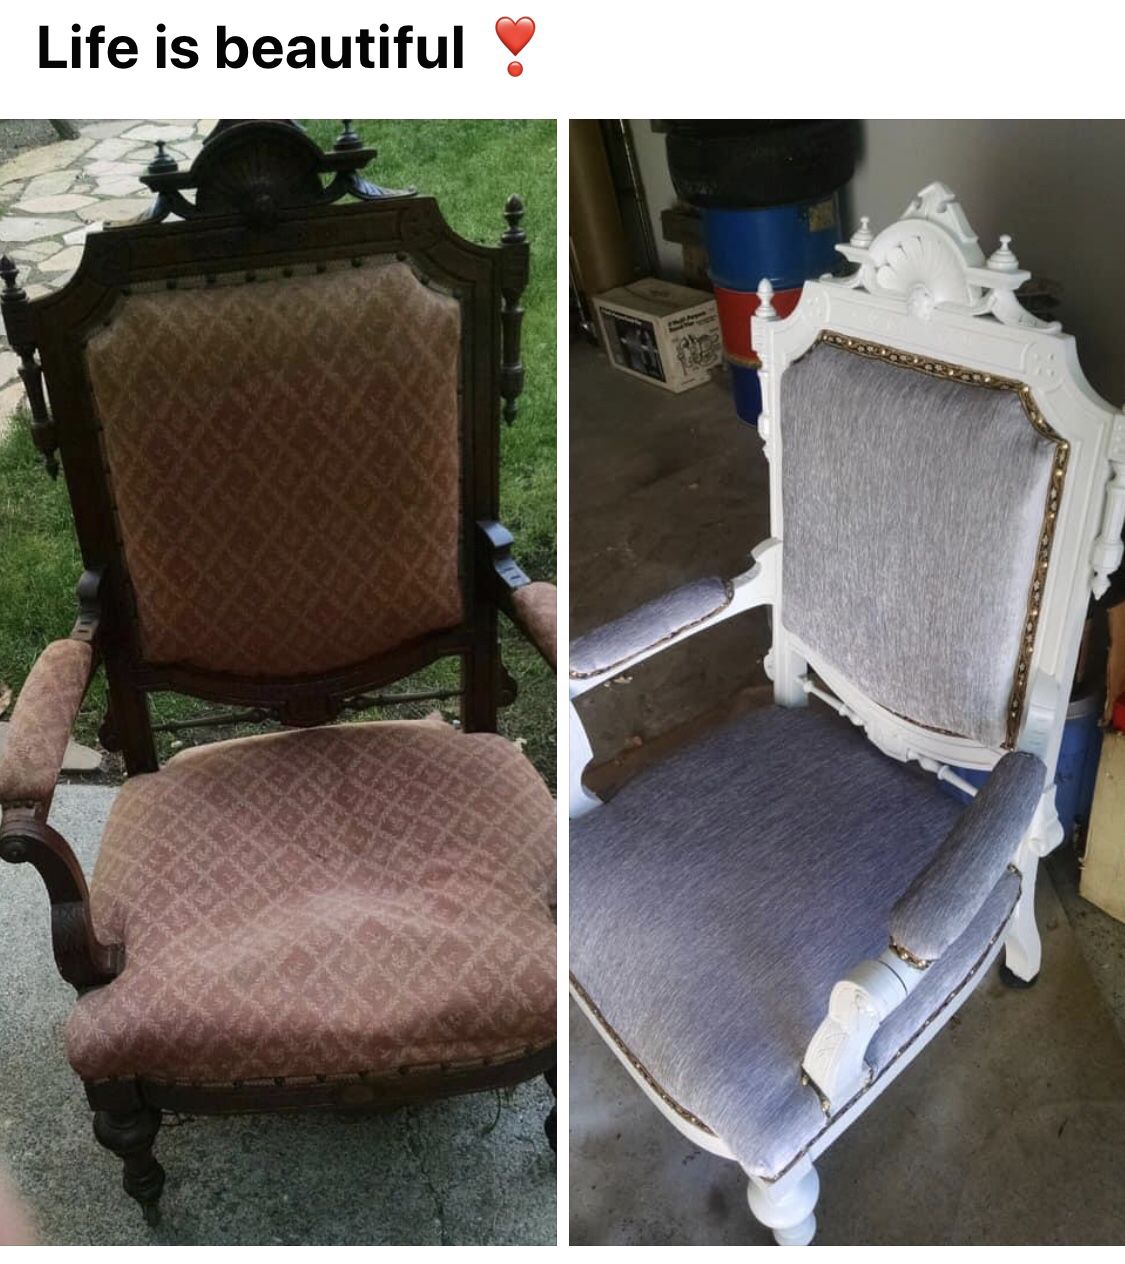 Throne chair